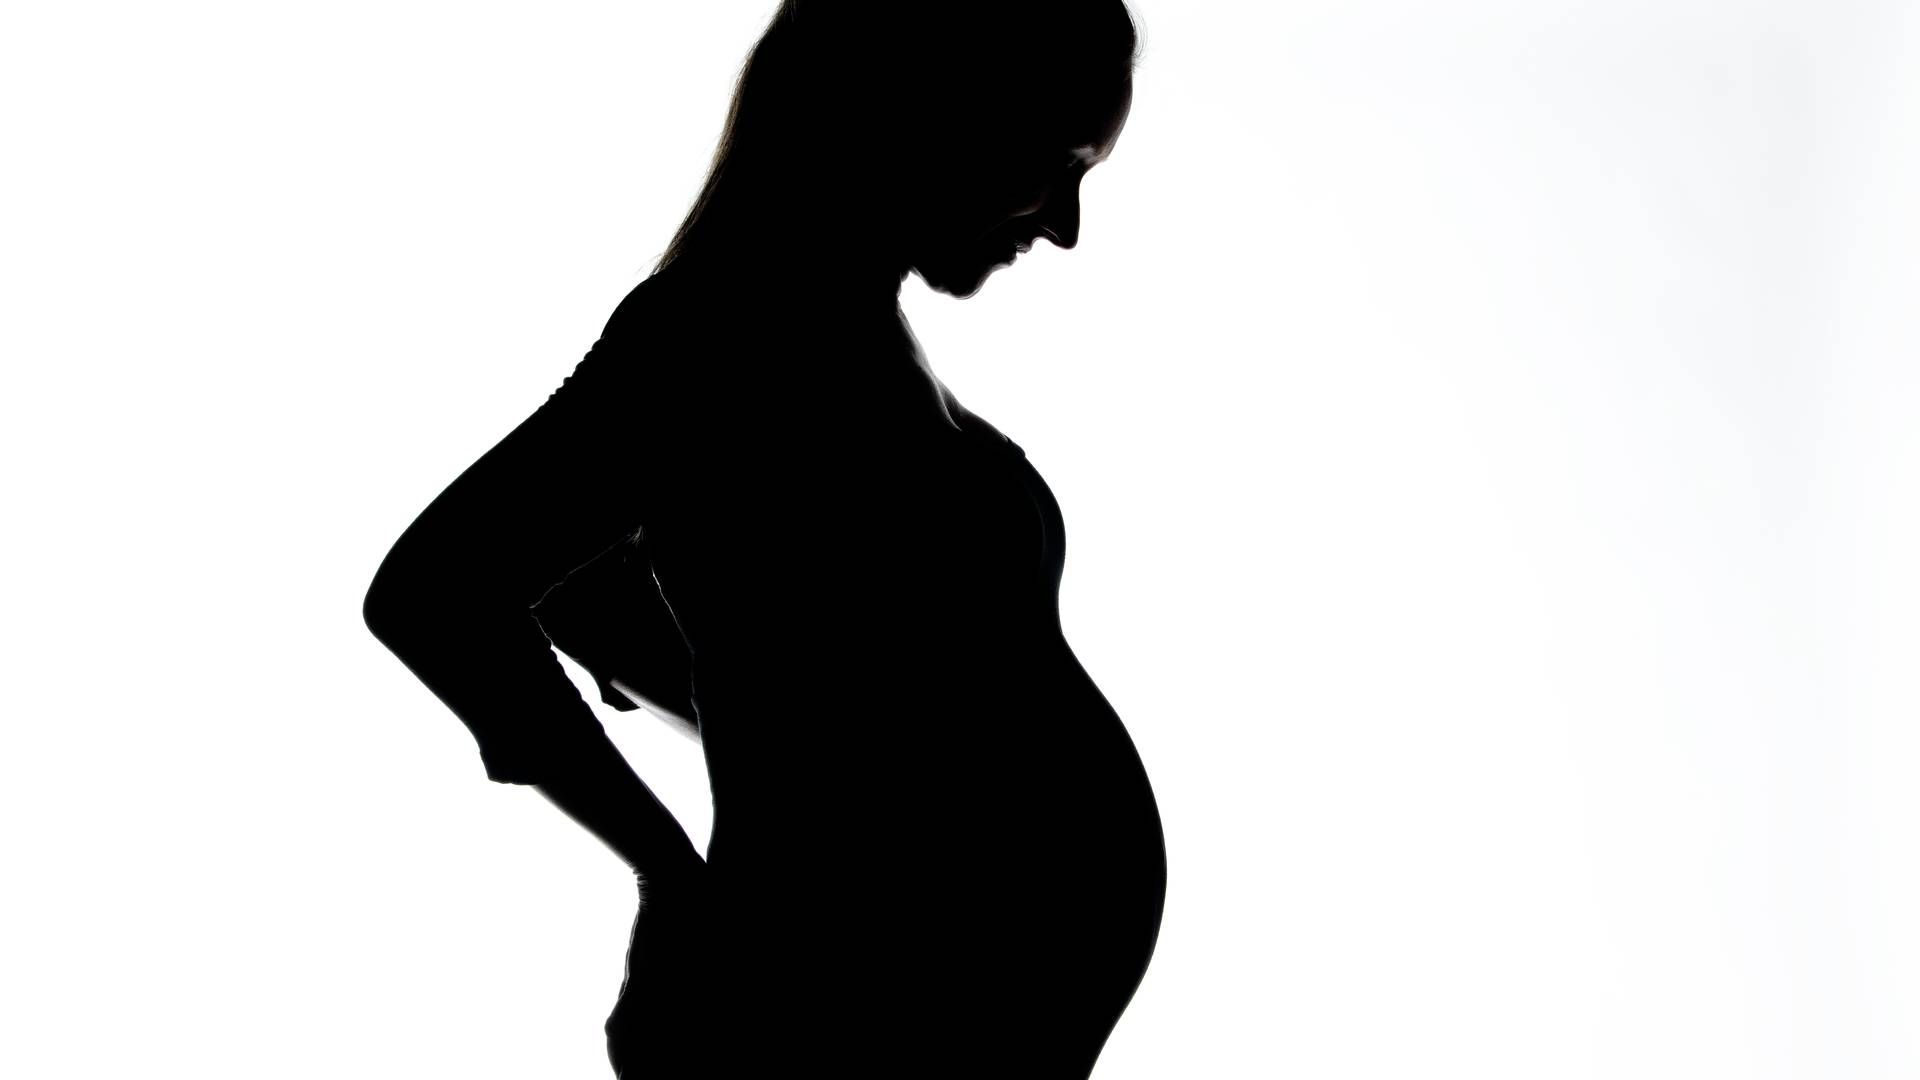 Bl.a. ulykkesforsikringers dækning af gravide og fødende har tiltrukket sig stor opmærksomhed de seneste år.